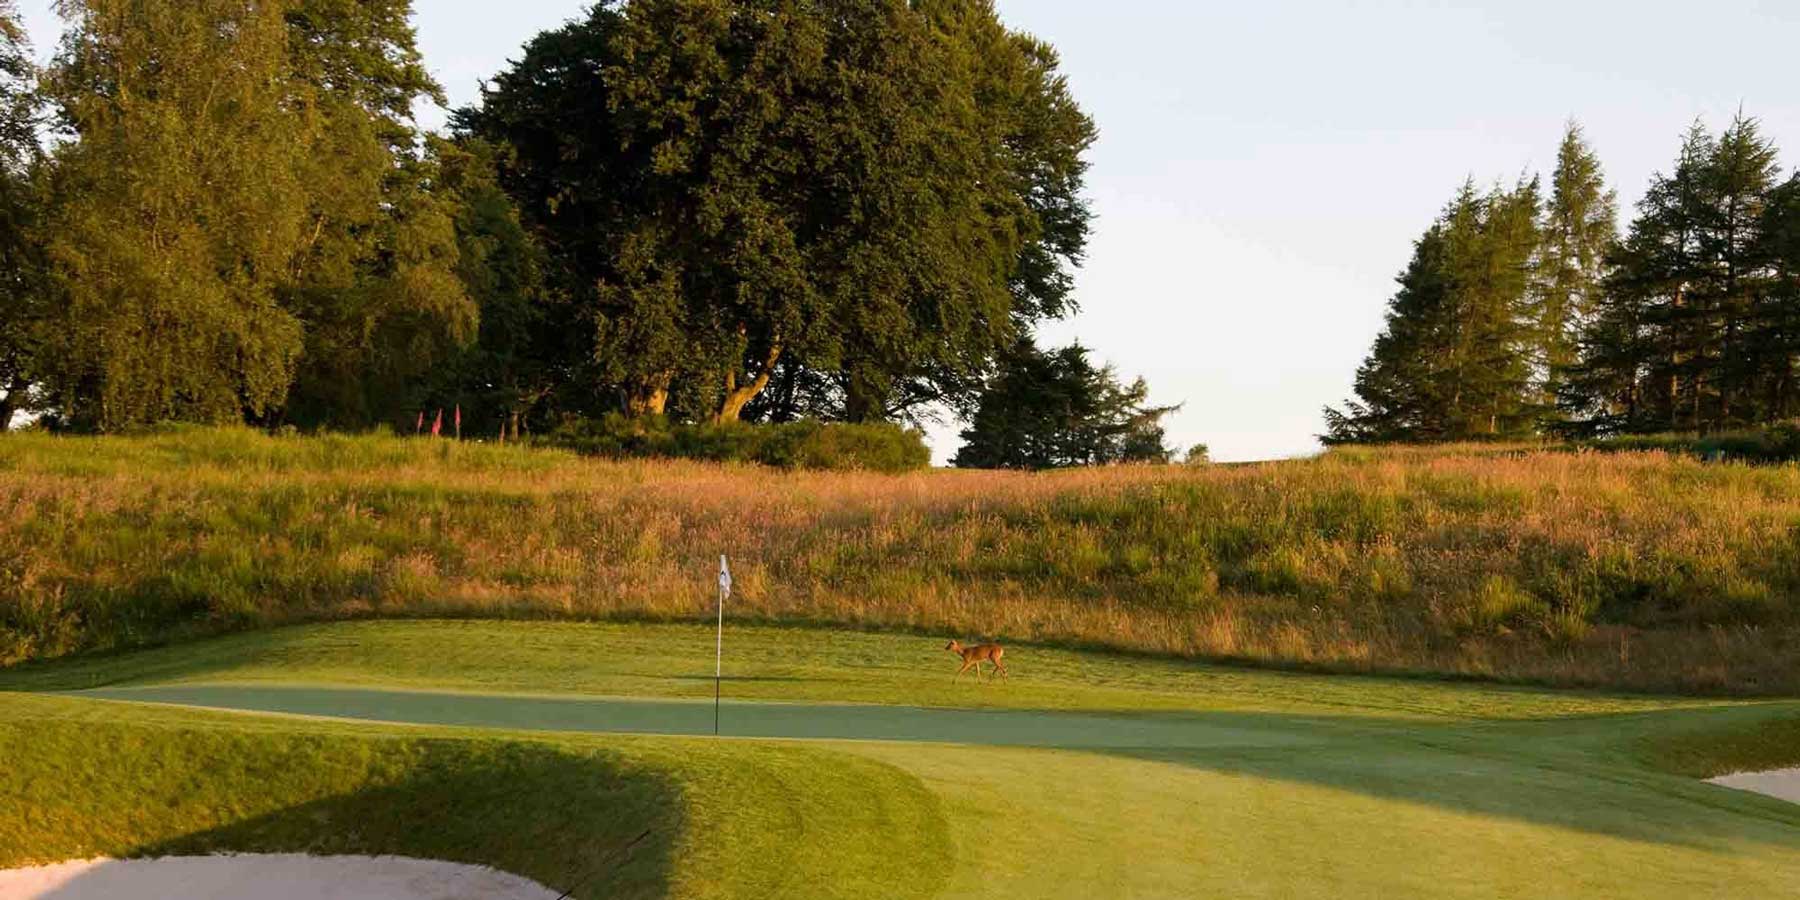 A deer walks across a golf green at Gleneagles